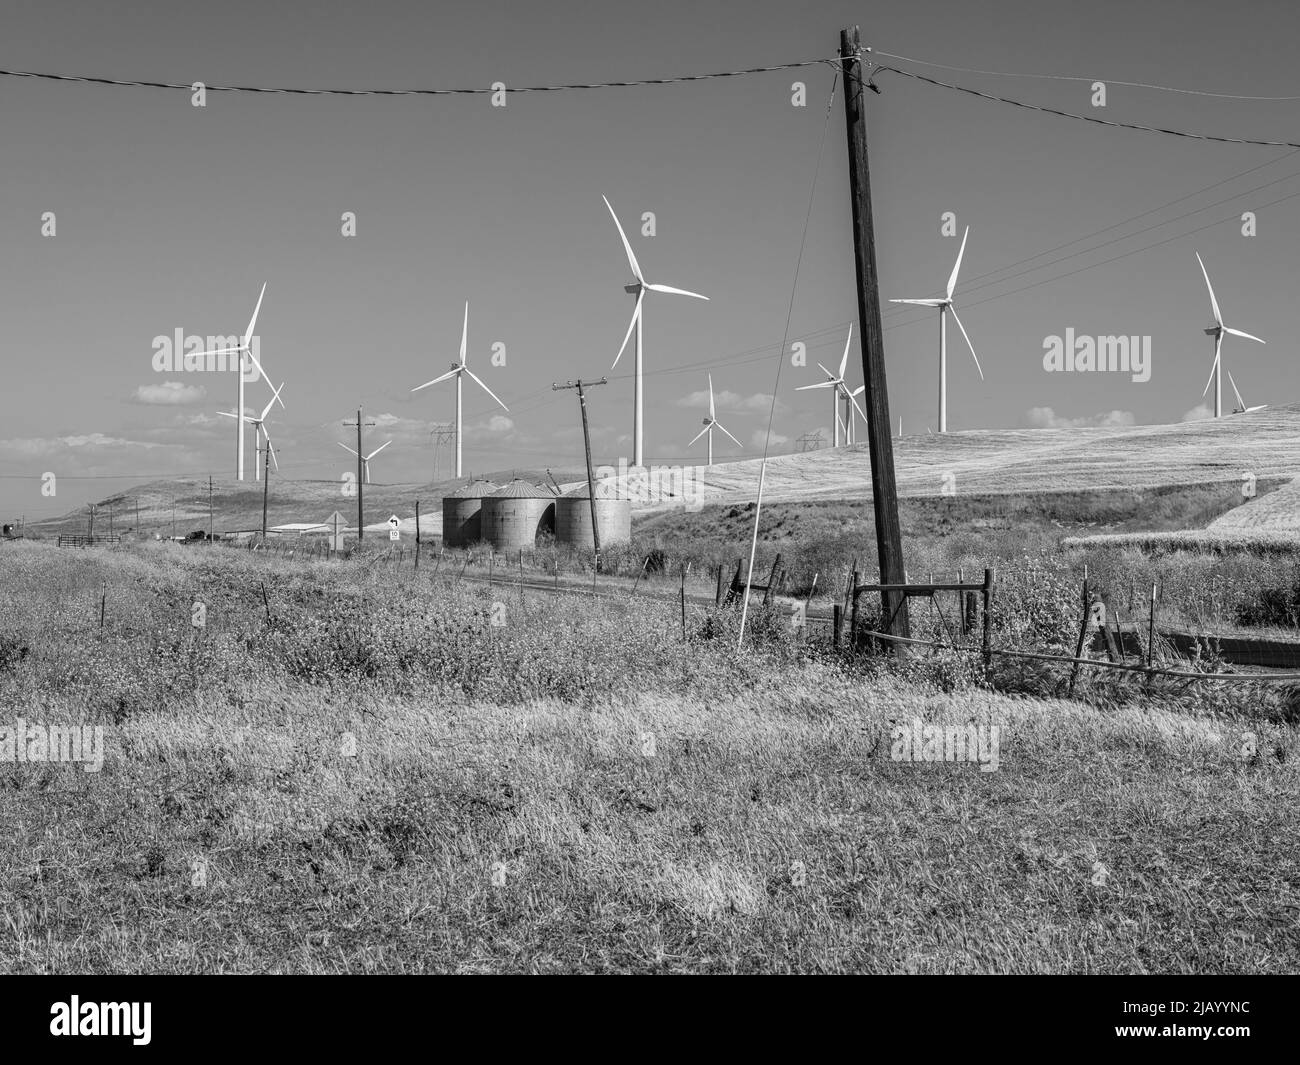 Dies ist das Windkraftwerk Shiloh in Montezuma Hills, Solano County, Kalifornien. Drei landwirtschaftliche Silos teilen sich das Ackerland mit Windturbinen Stockfoto